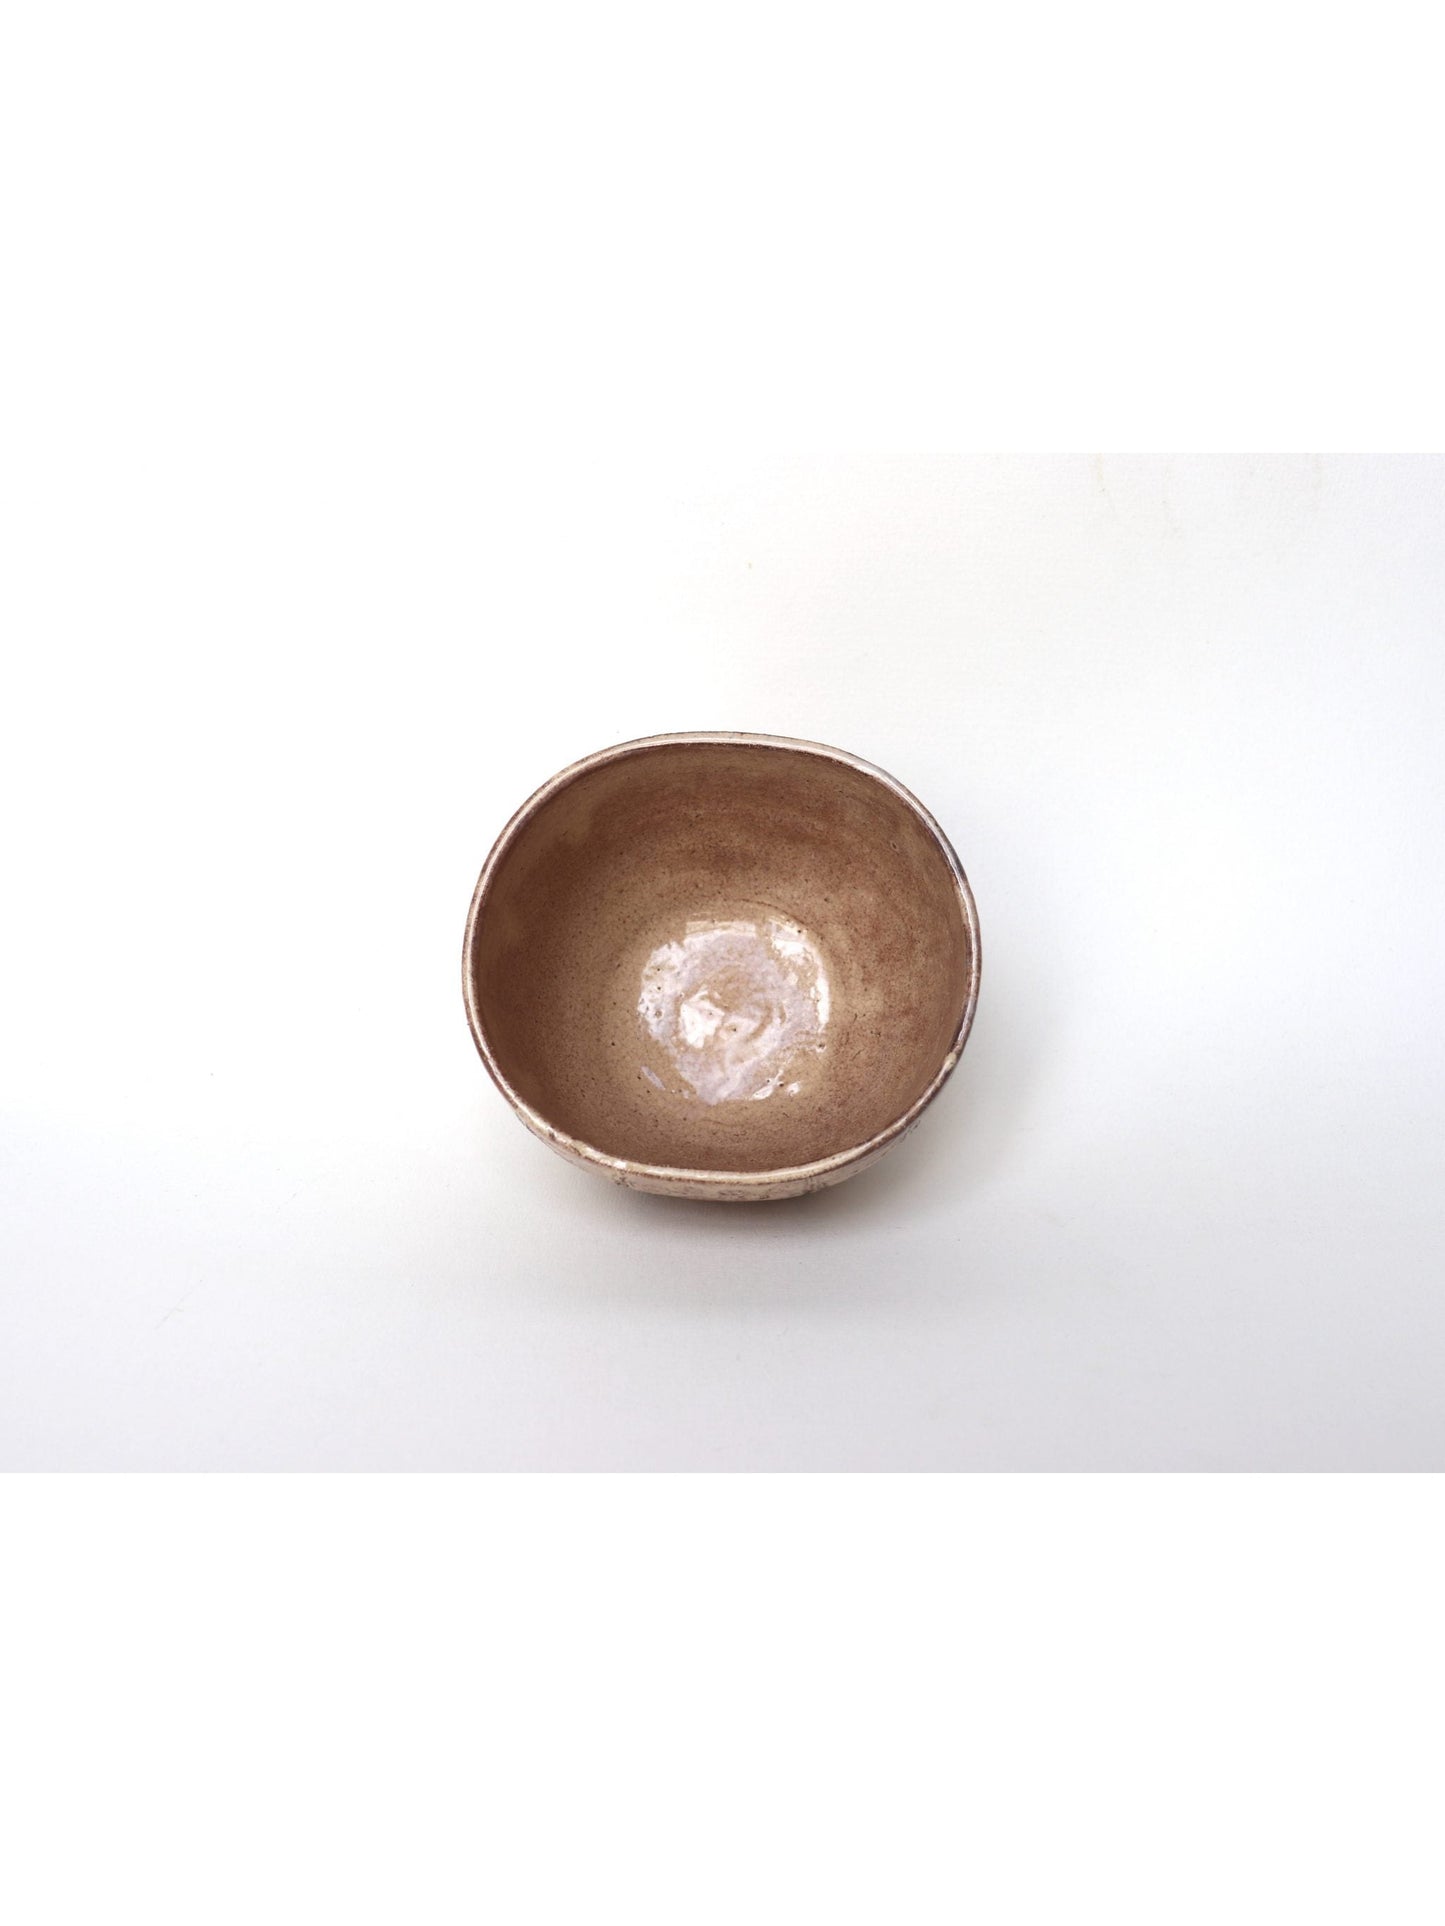 Matcha bowl / "Tawara" Hagi-yaki